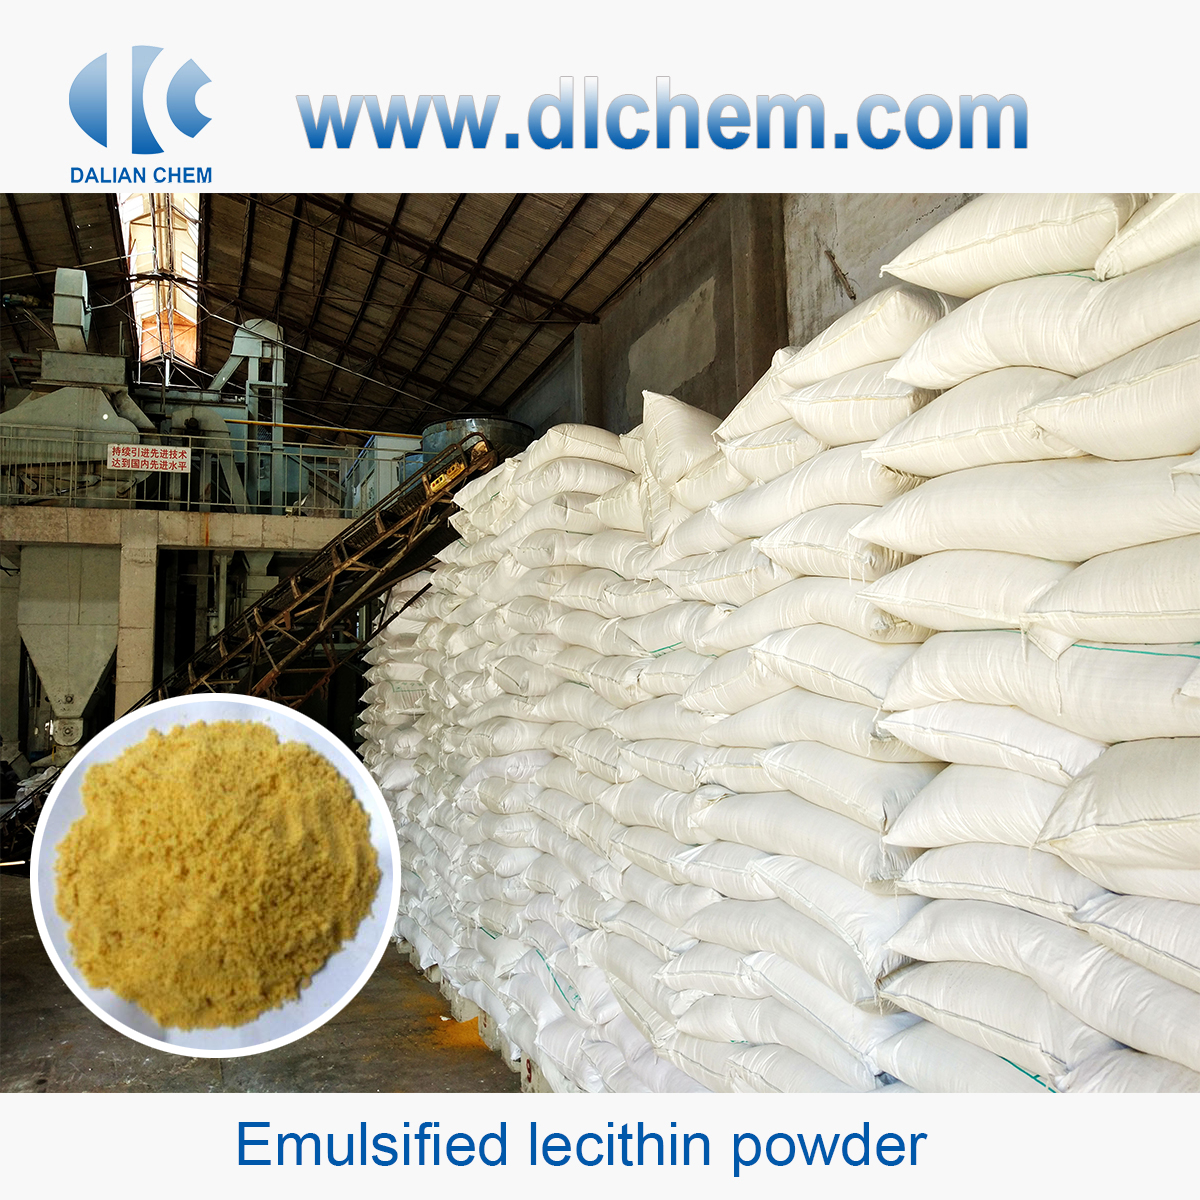 Emulsified lecithin powder